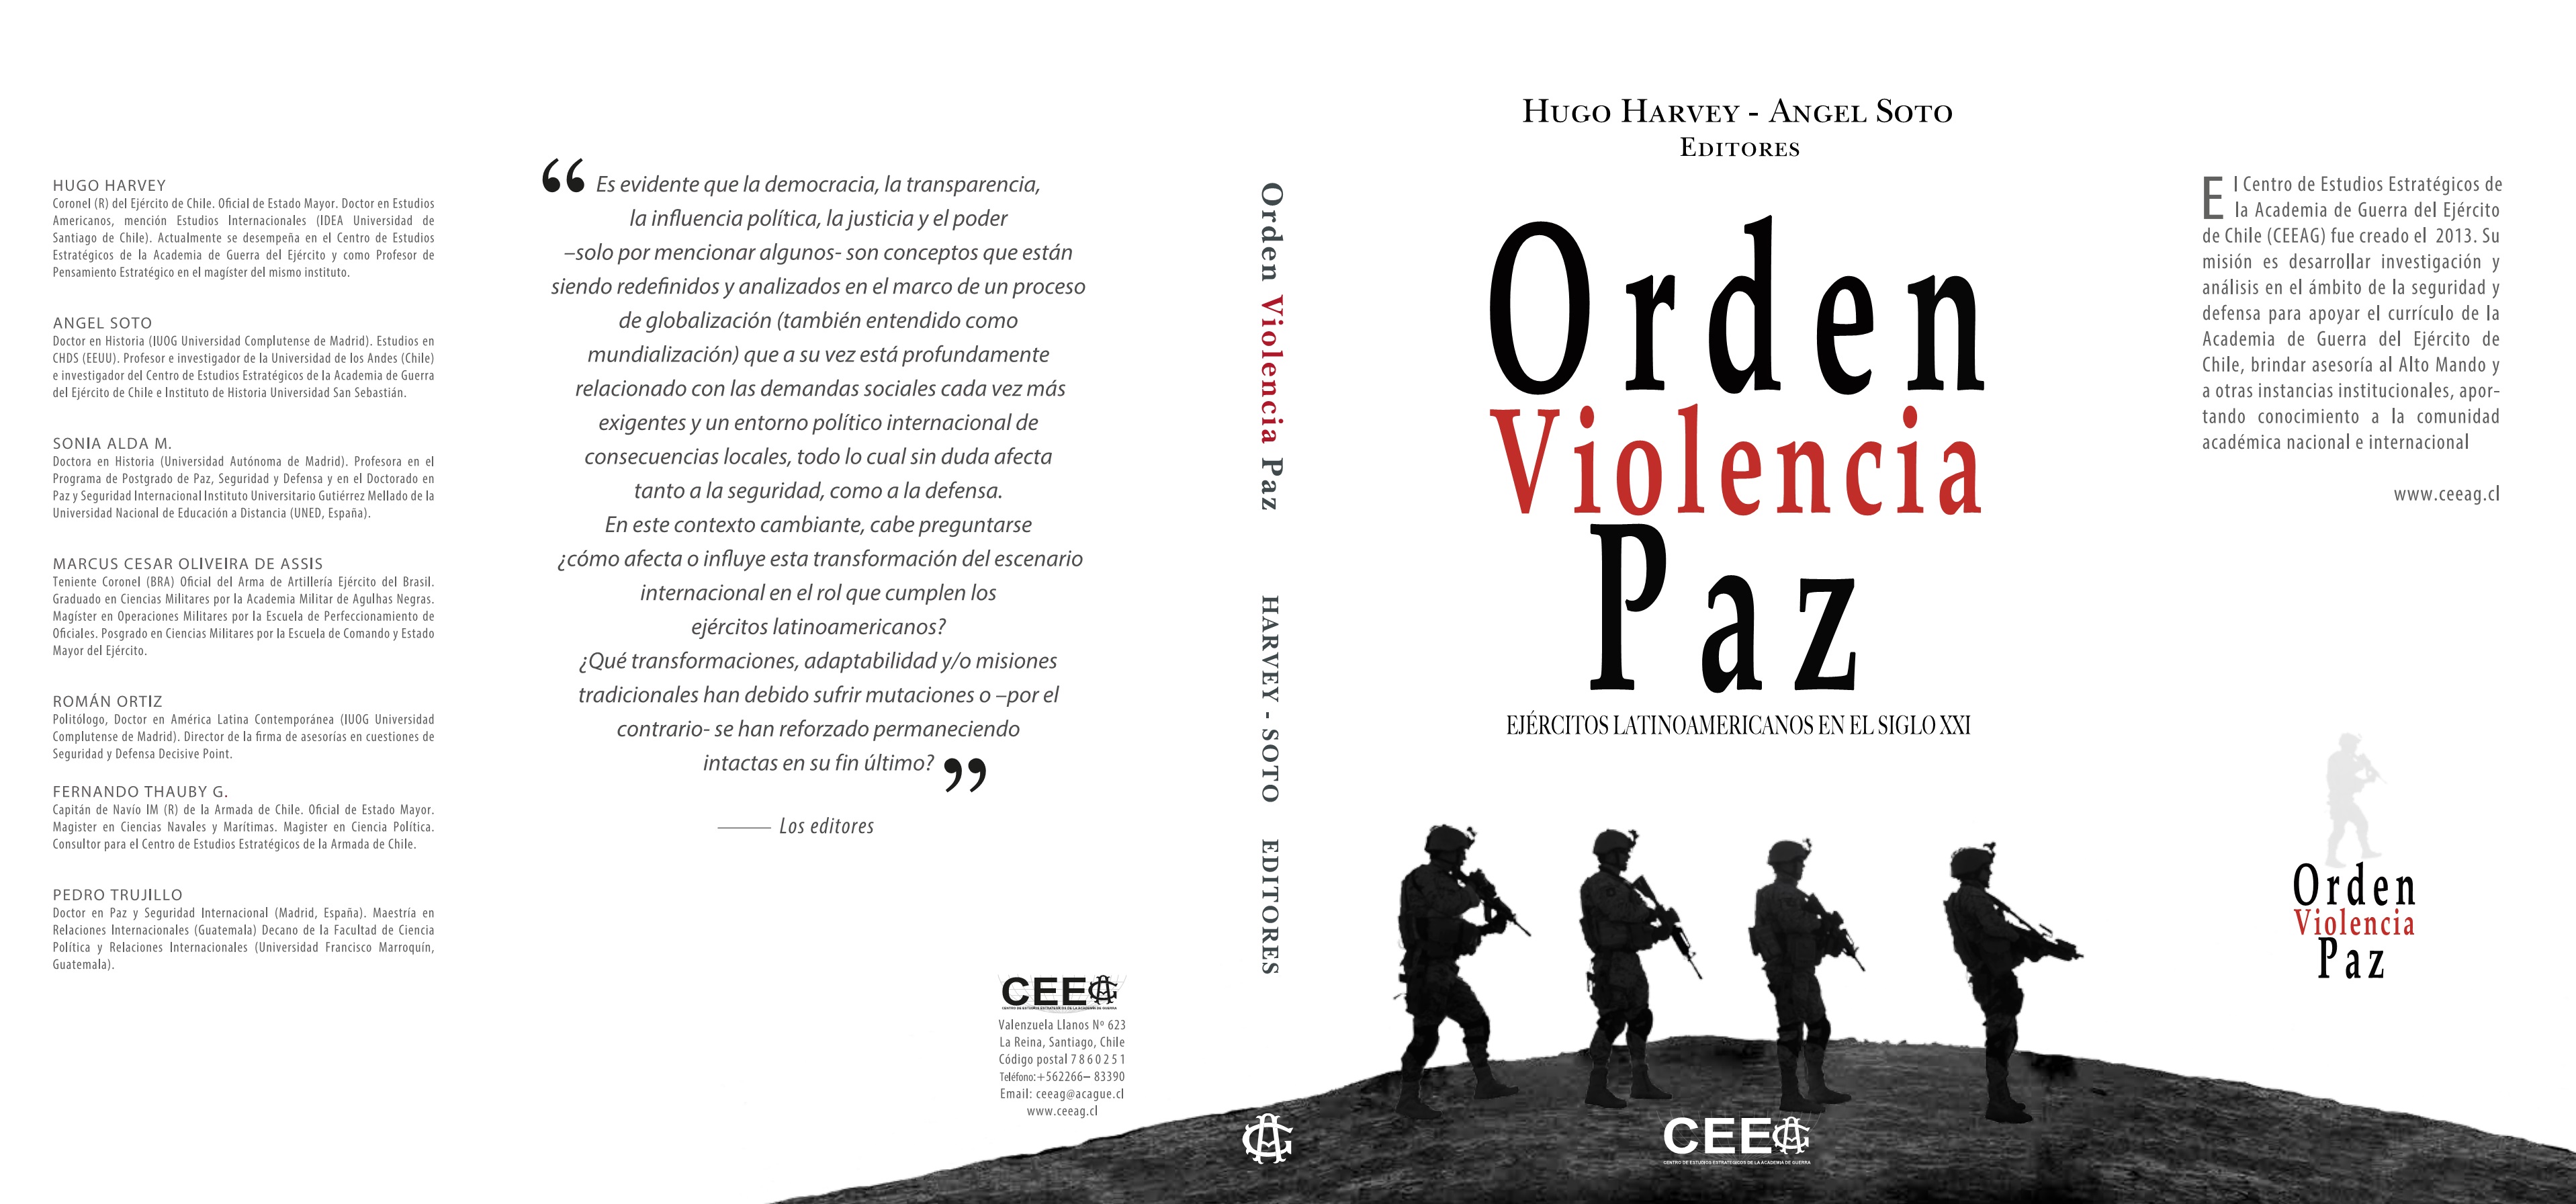 Libro: Orden Violencia y Paz. Ejércitos Latinoamericanos en el Siglo XXI